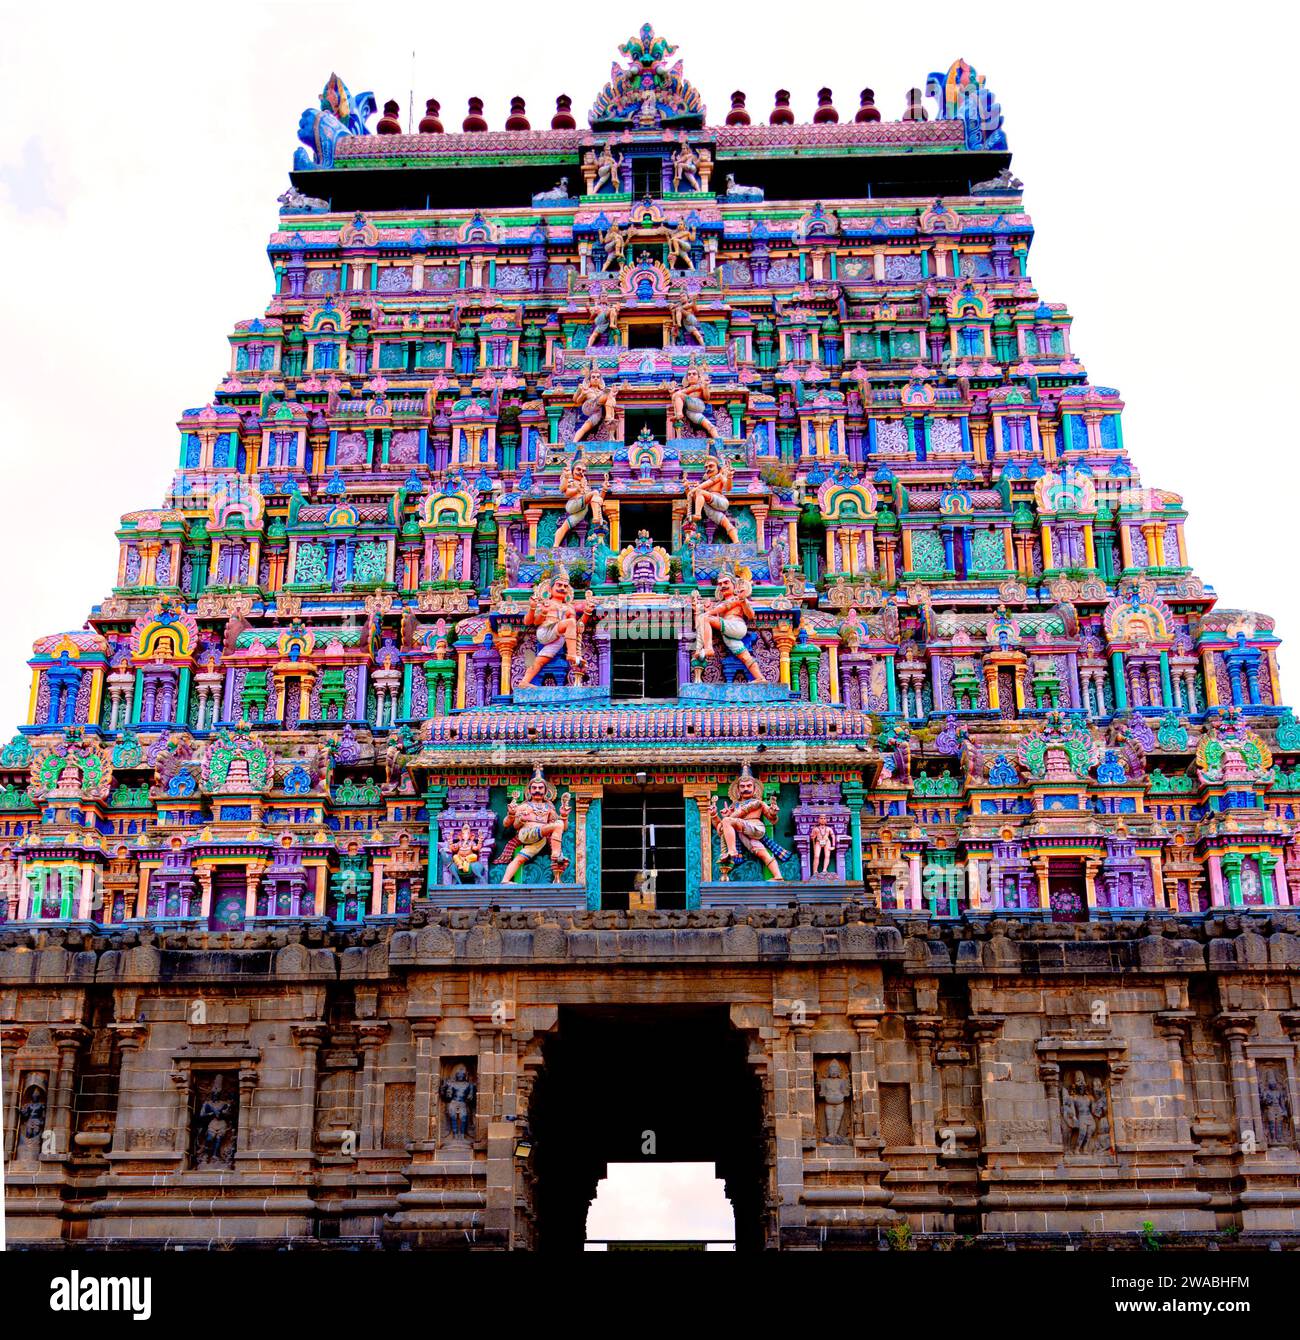 Grand dieu chanceux seigneur Nataraja dans le sud de l'Inde Tamil Nadu temple hindou, en tant que symbole, Shiva Nataraja est une invention brillante Banque D'Images